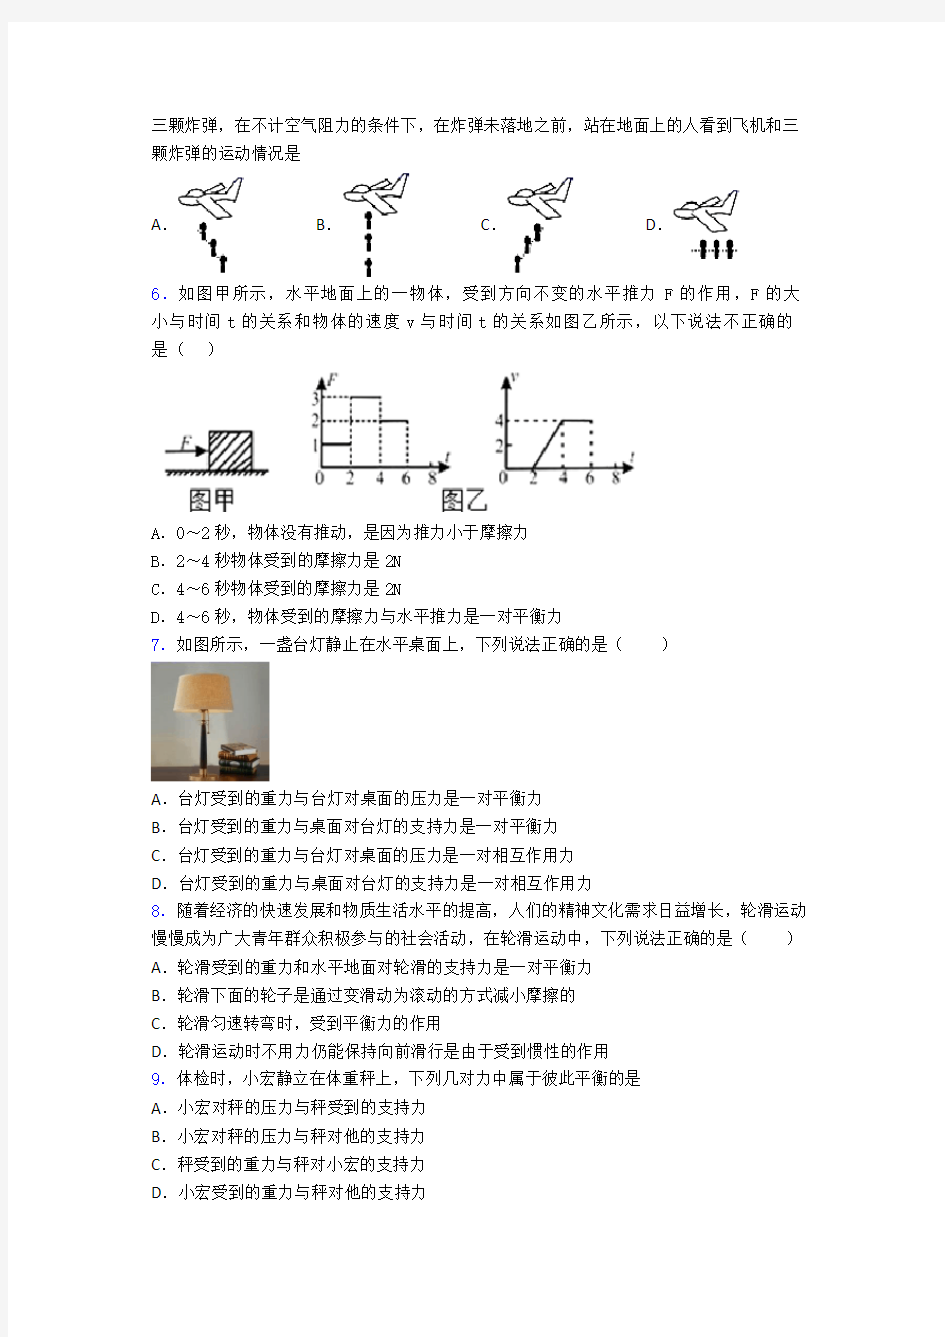 上海建平实验中学运动和力单元综合练习